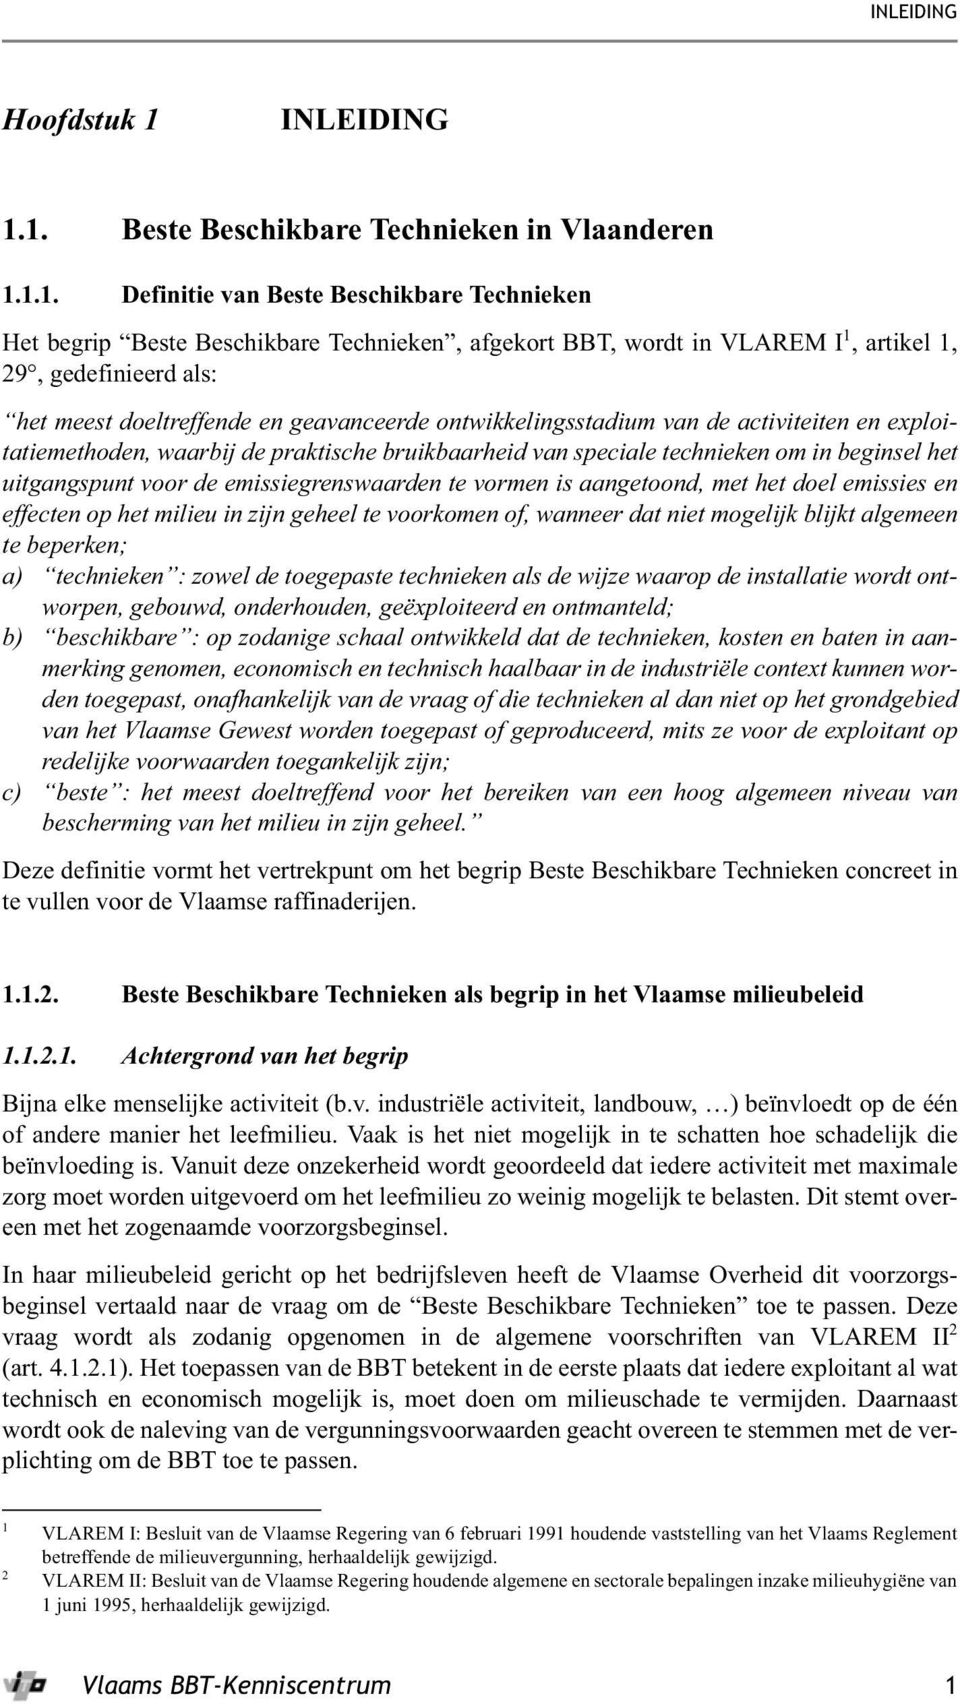 1. Beste Beschikbare Technieken in Vlaanderen 1.1.1. Definitie van Beste Beschikbare Technieken Het begrip Beste Beschikbare Technieken, afgekort BBT, wordt in VLAREM I 1, artikel 1, 29, gedefinieerd